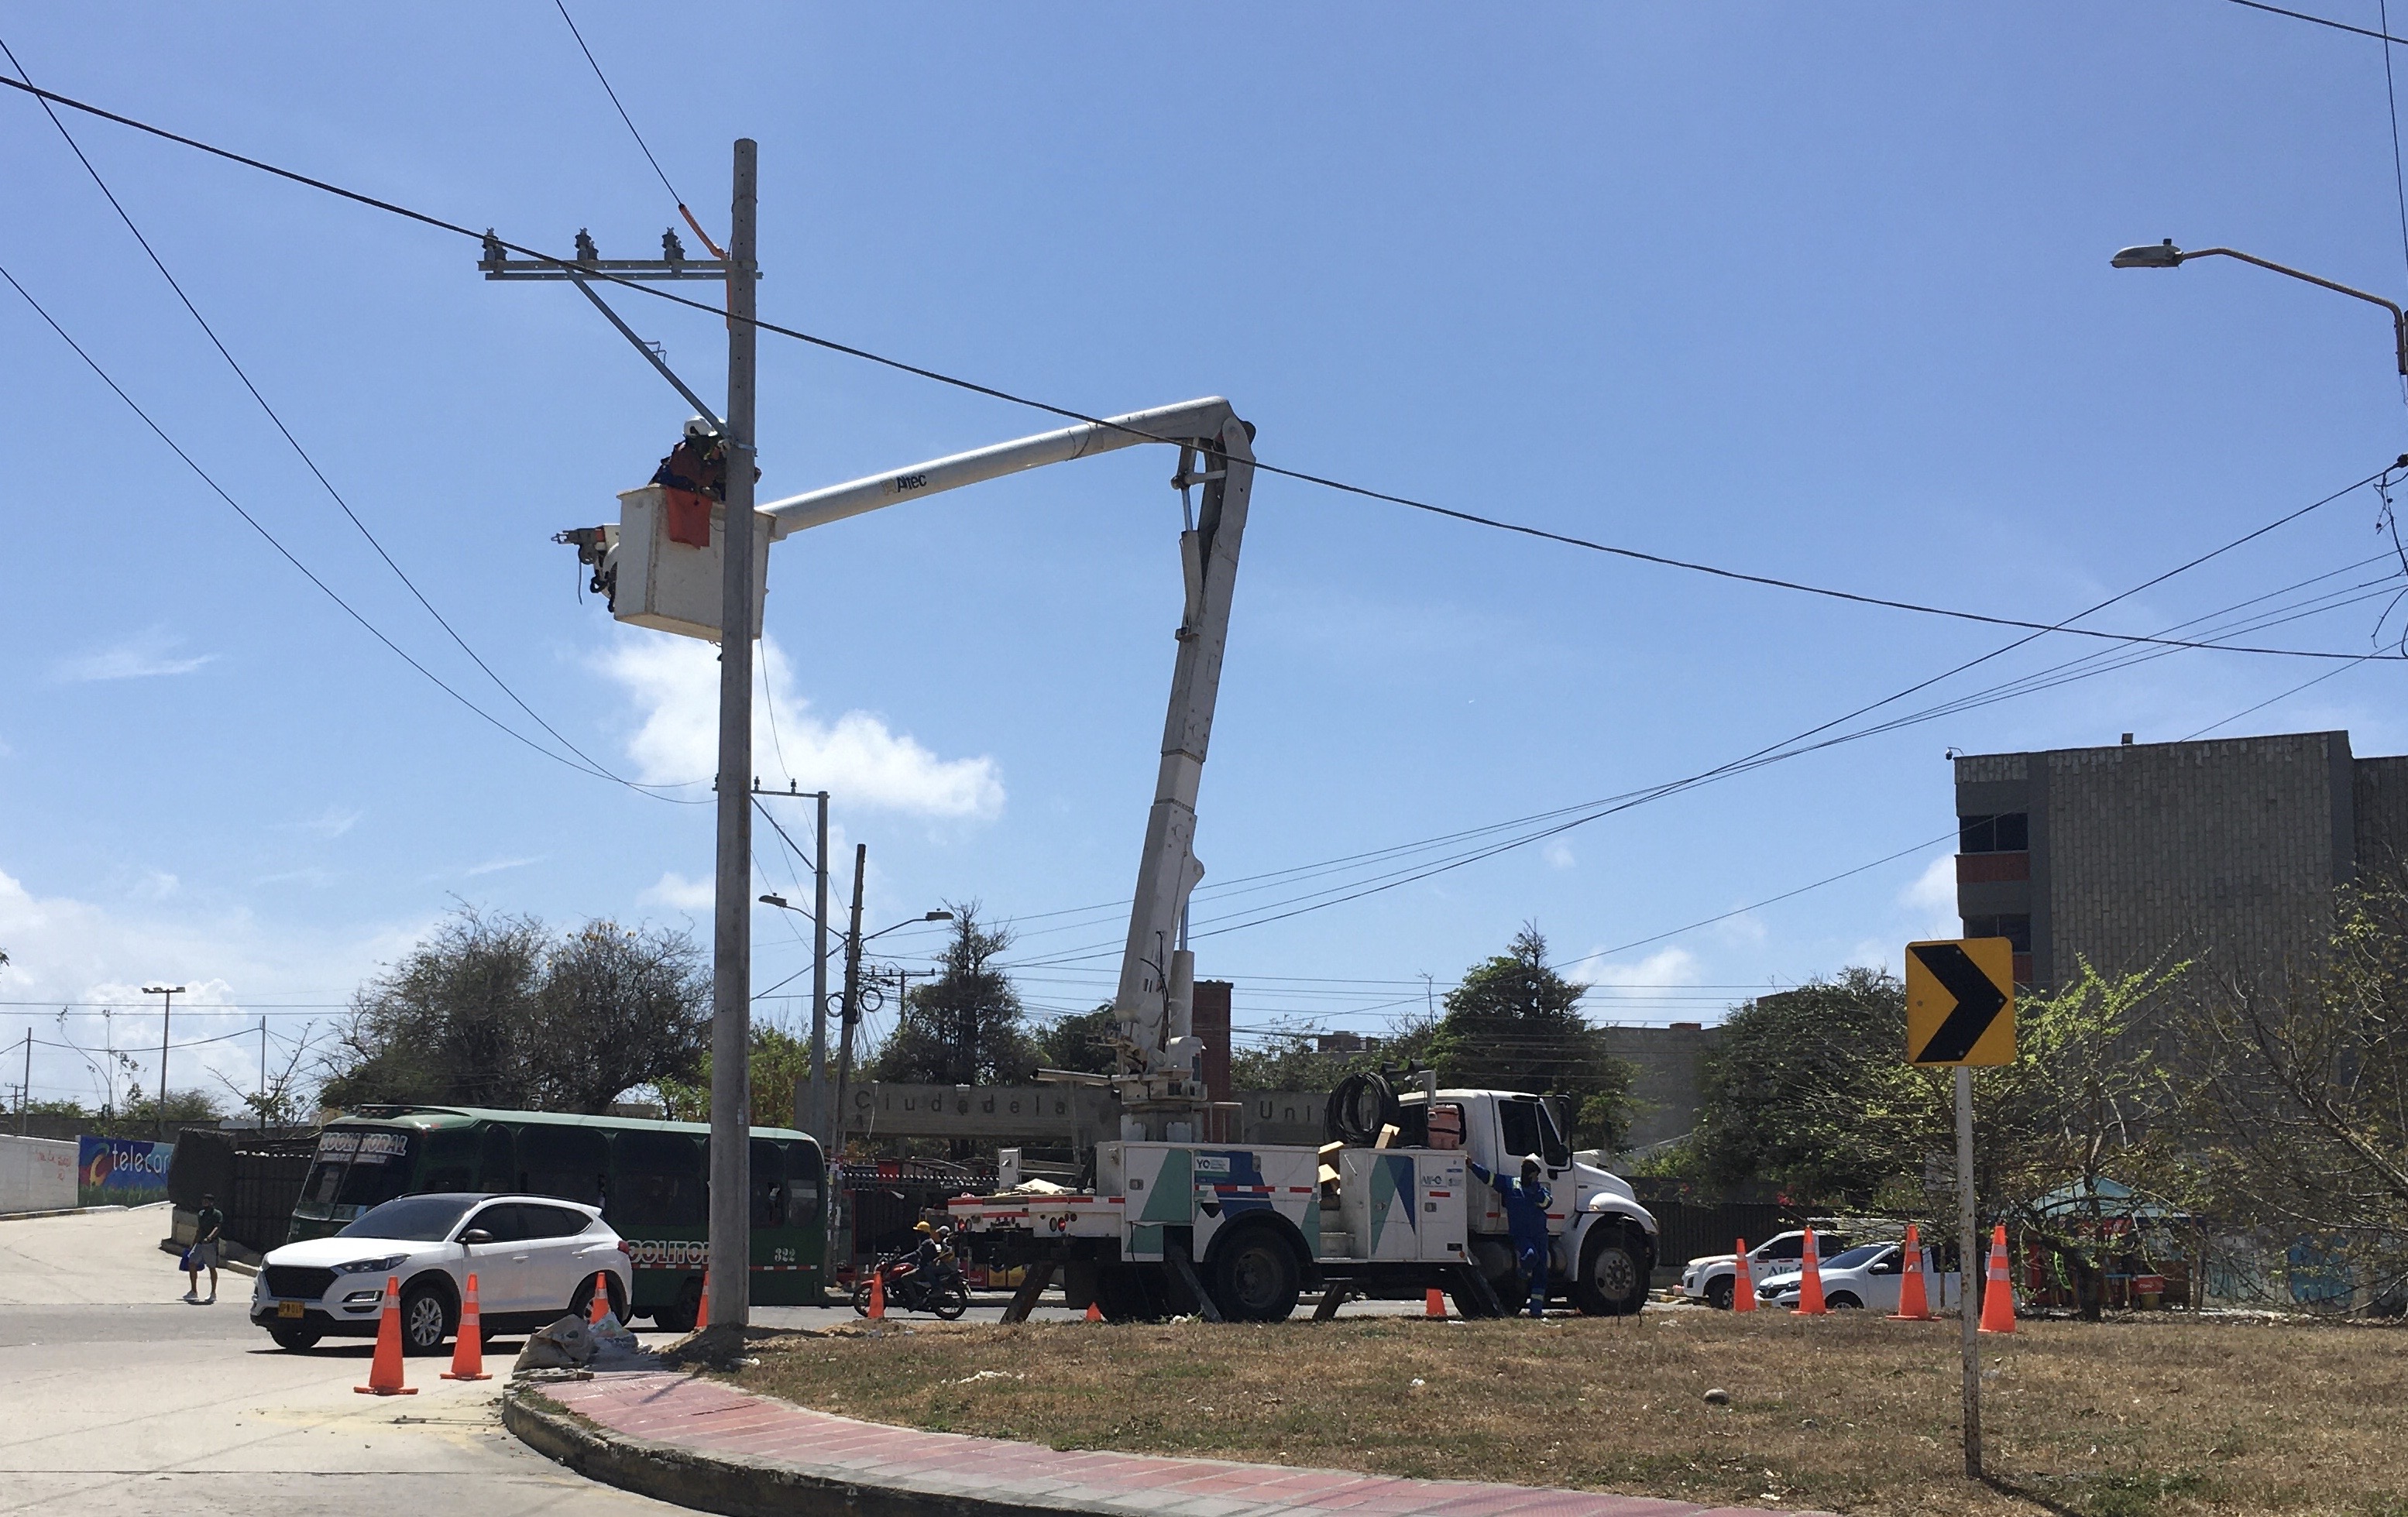 Air-e suspenderá el servicio de luz mañana miércoles por instalación de redes eléctricas en sectores del norte de Barranquilla, en Soledad, Malambo, Salgar y Santa Verónica – @Aire_Energia